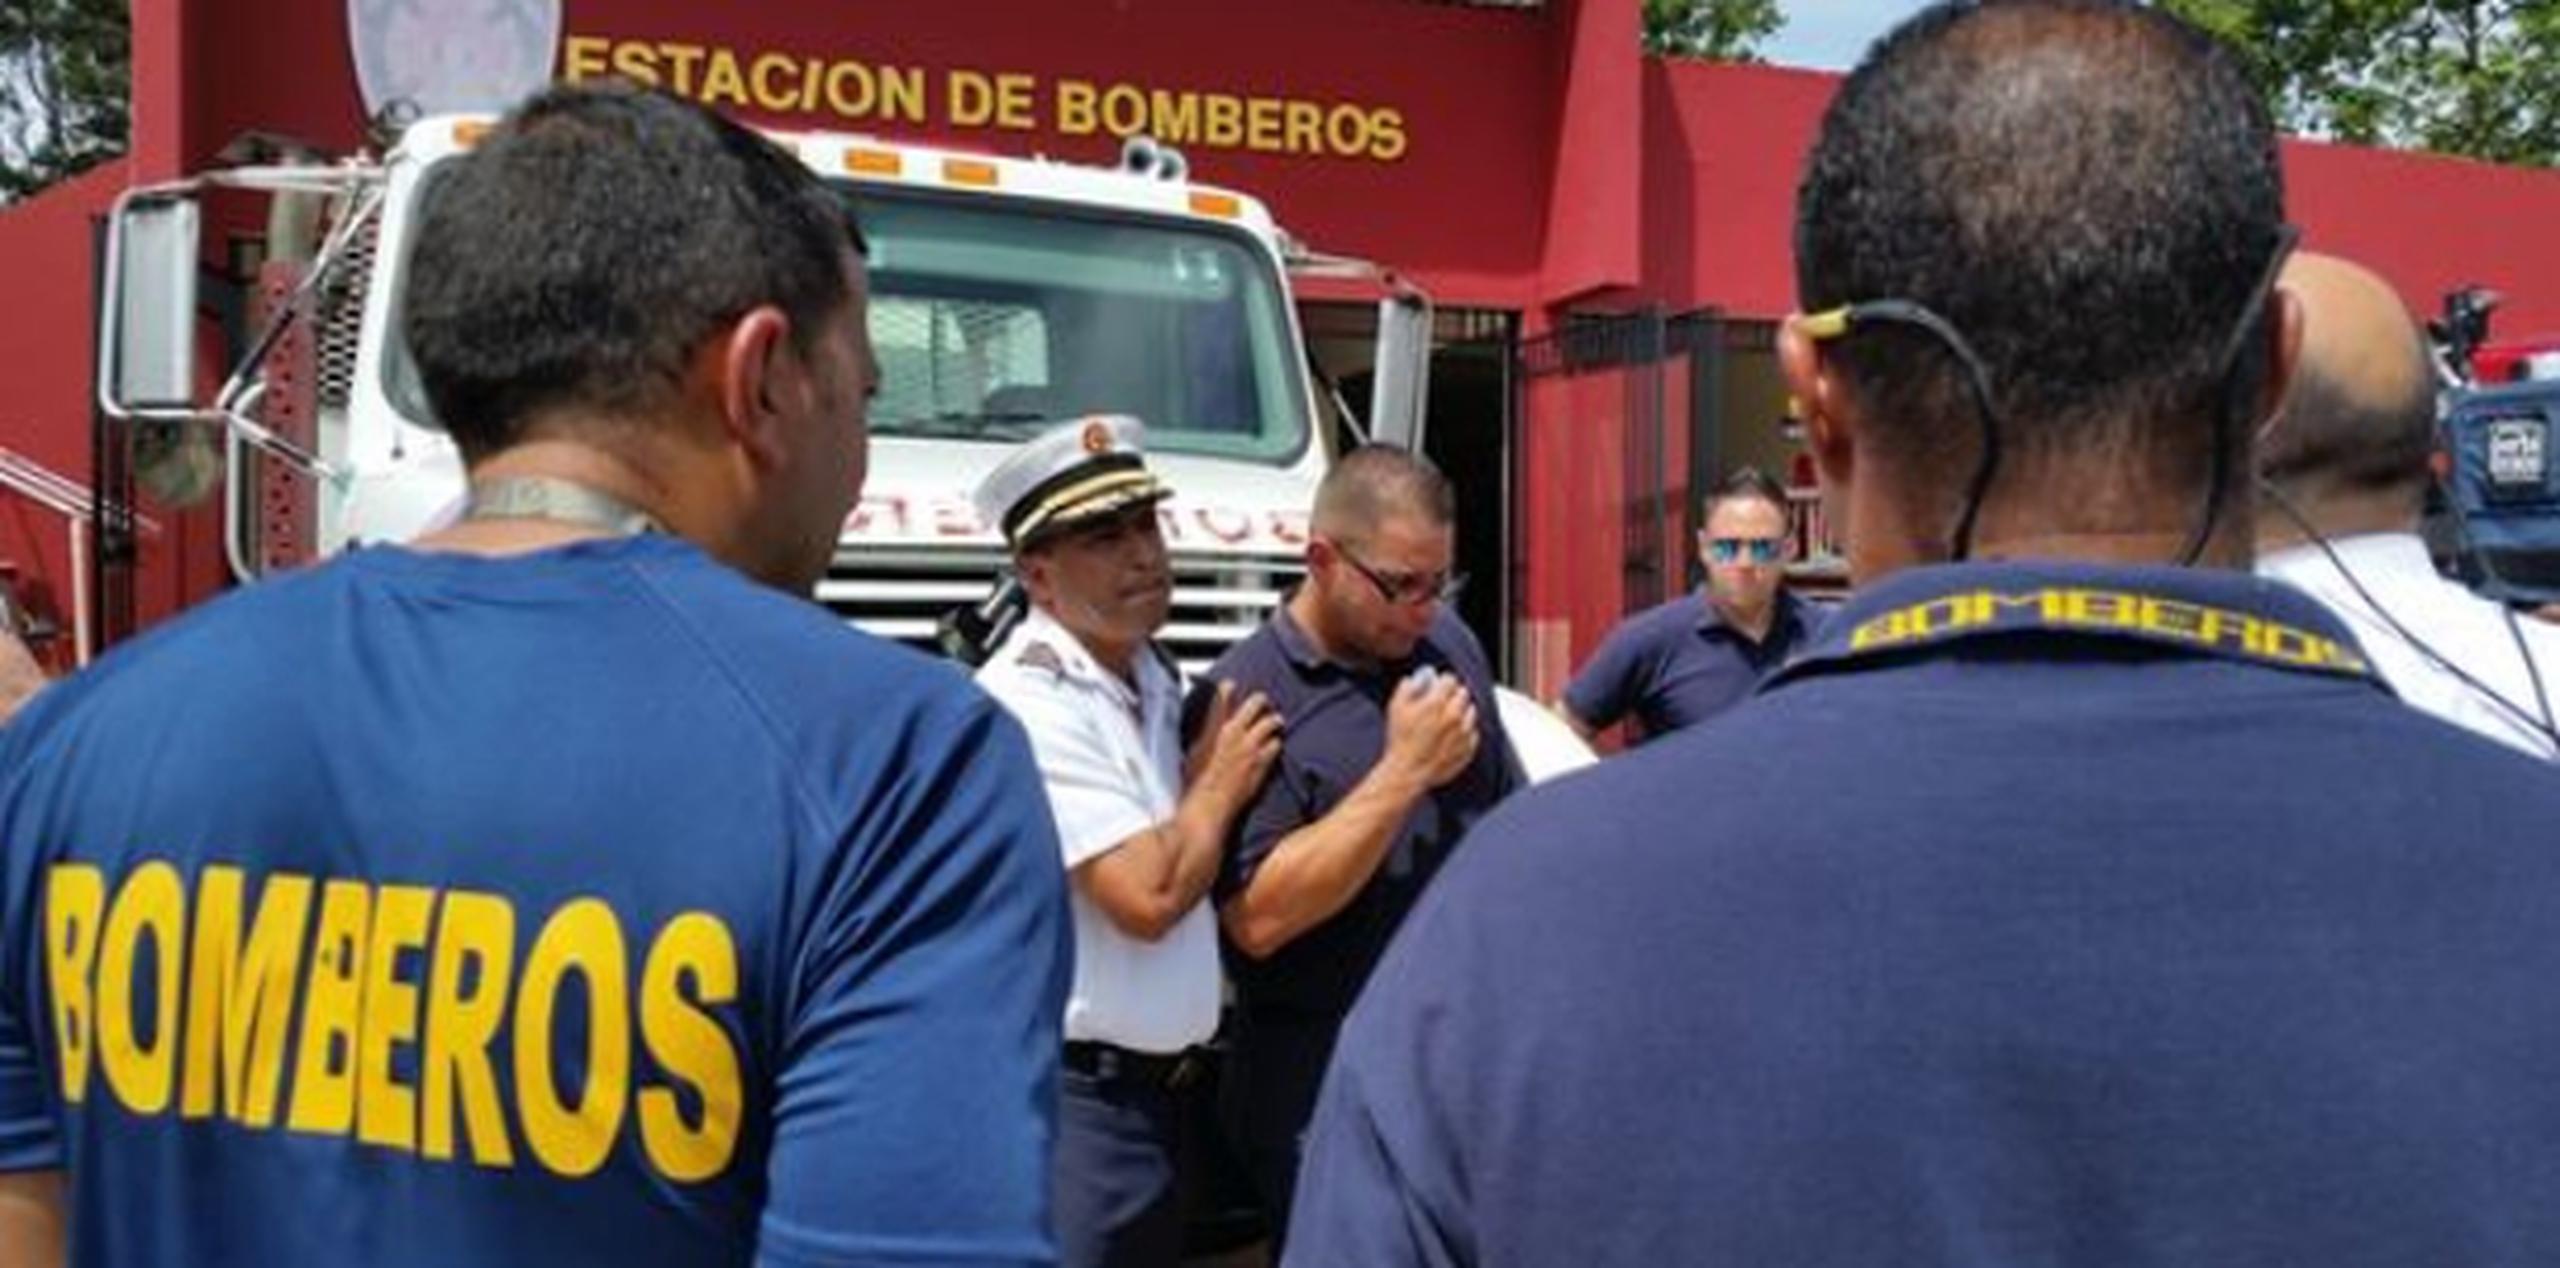 La tristeza era evidente en la estación de bomberos de Carolina, donde laboraba Carlos Carrasquillo Pizarro.  (agustin.criollo@gfrmedia.com )